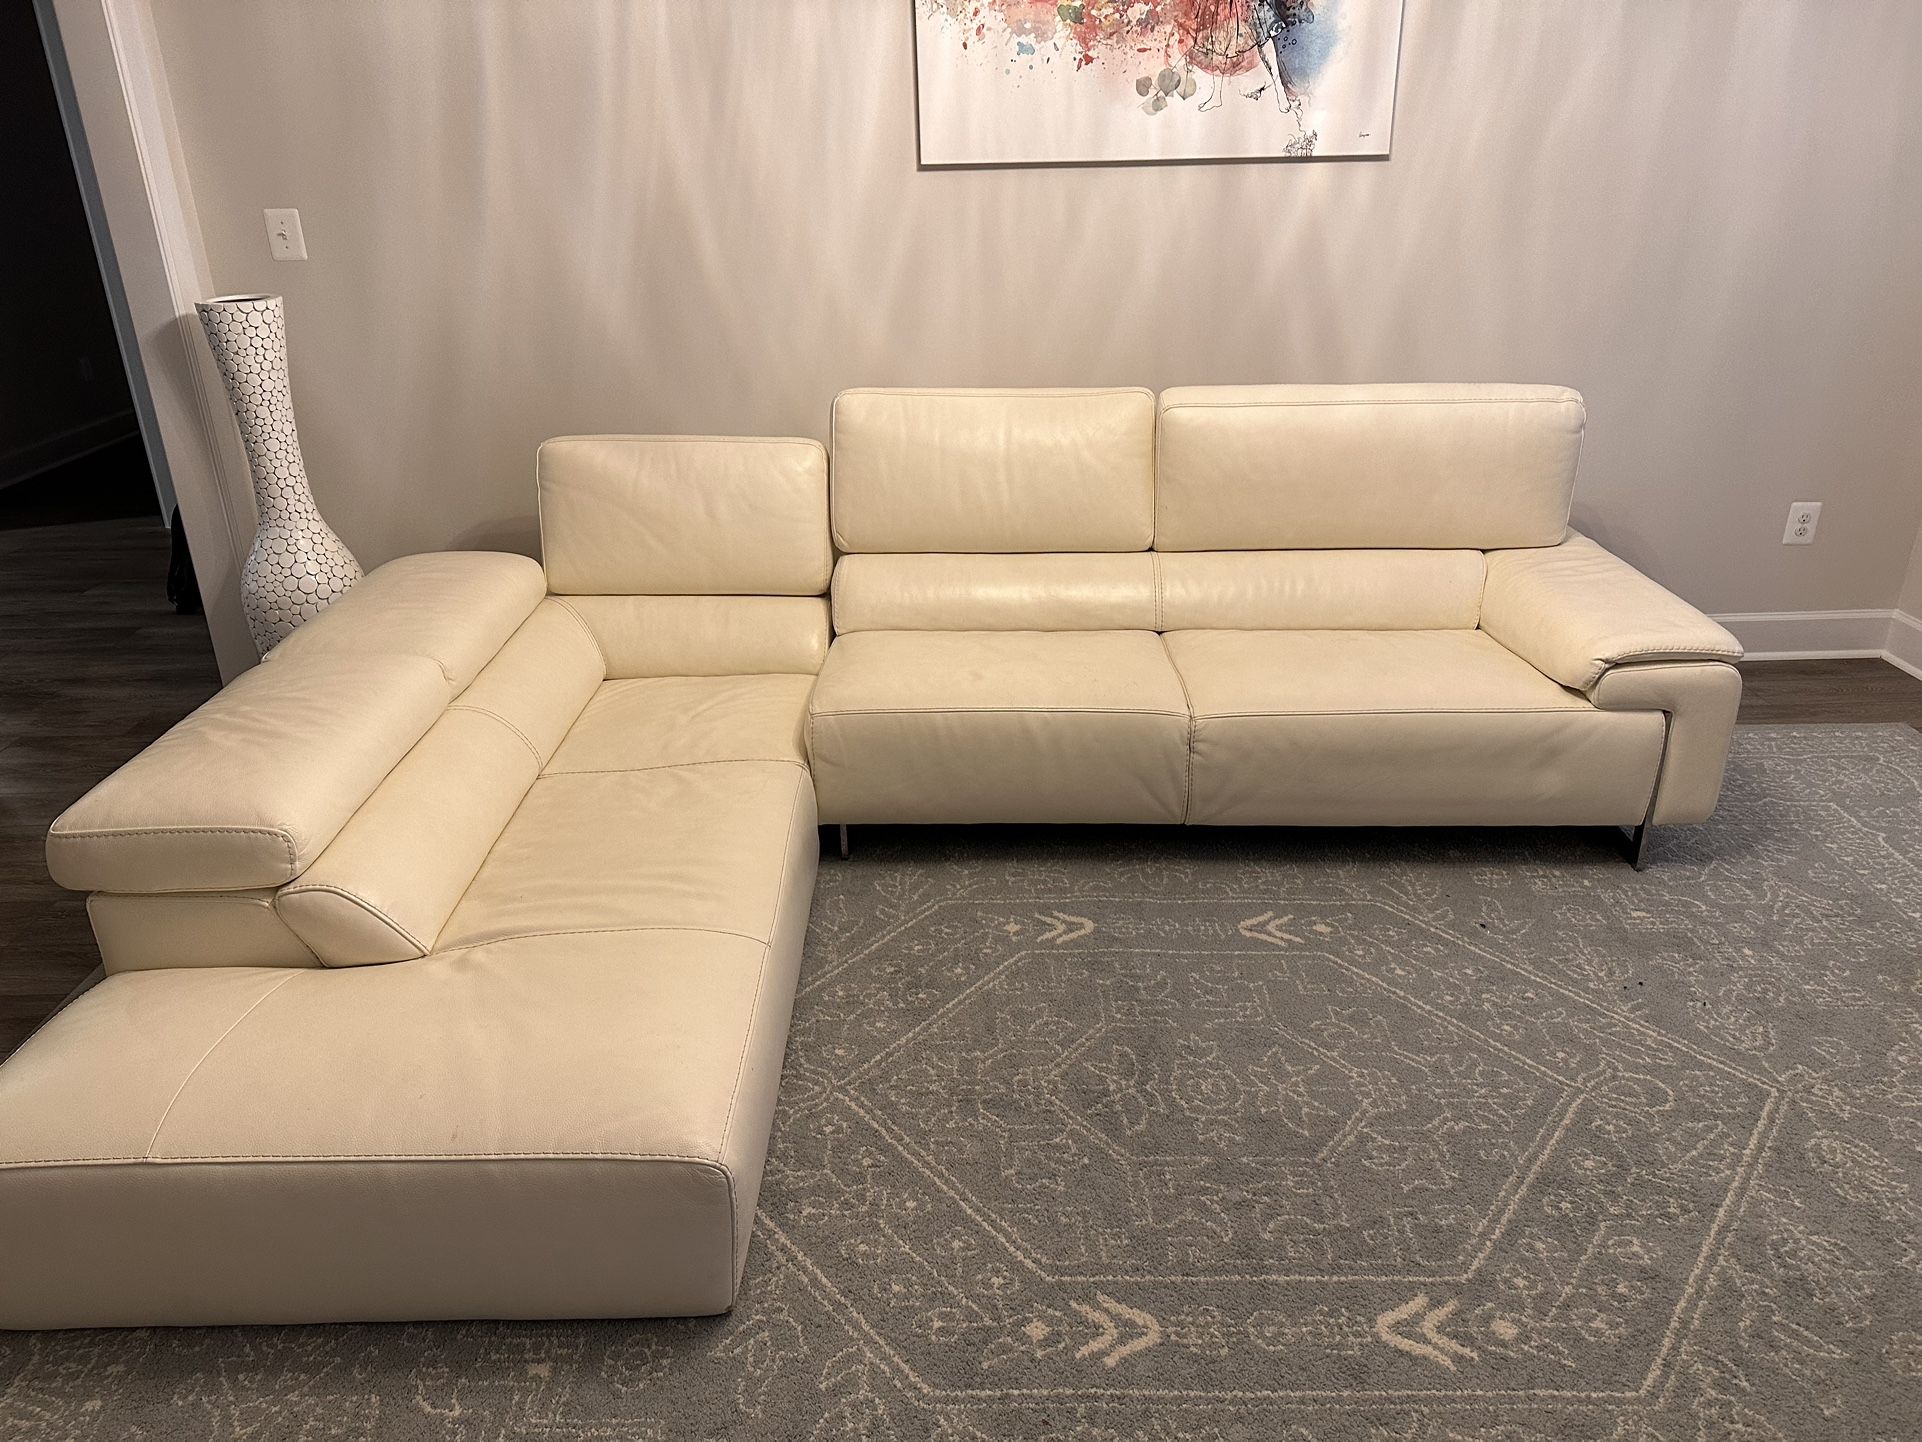 Beautiful Sofa - $199